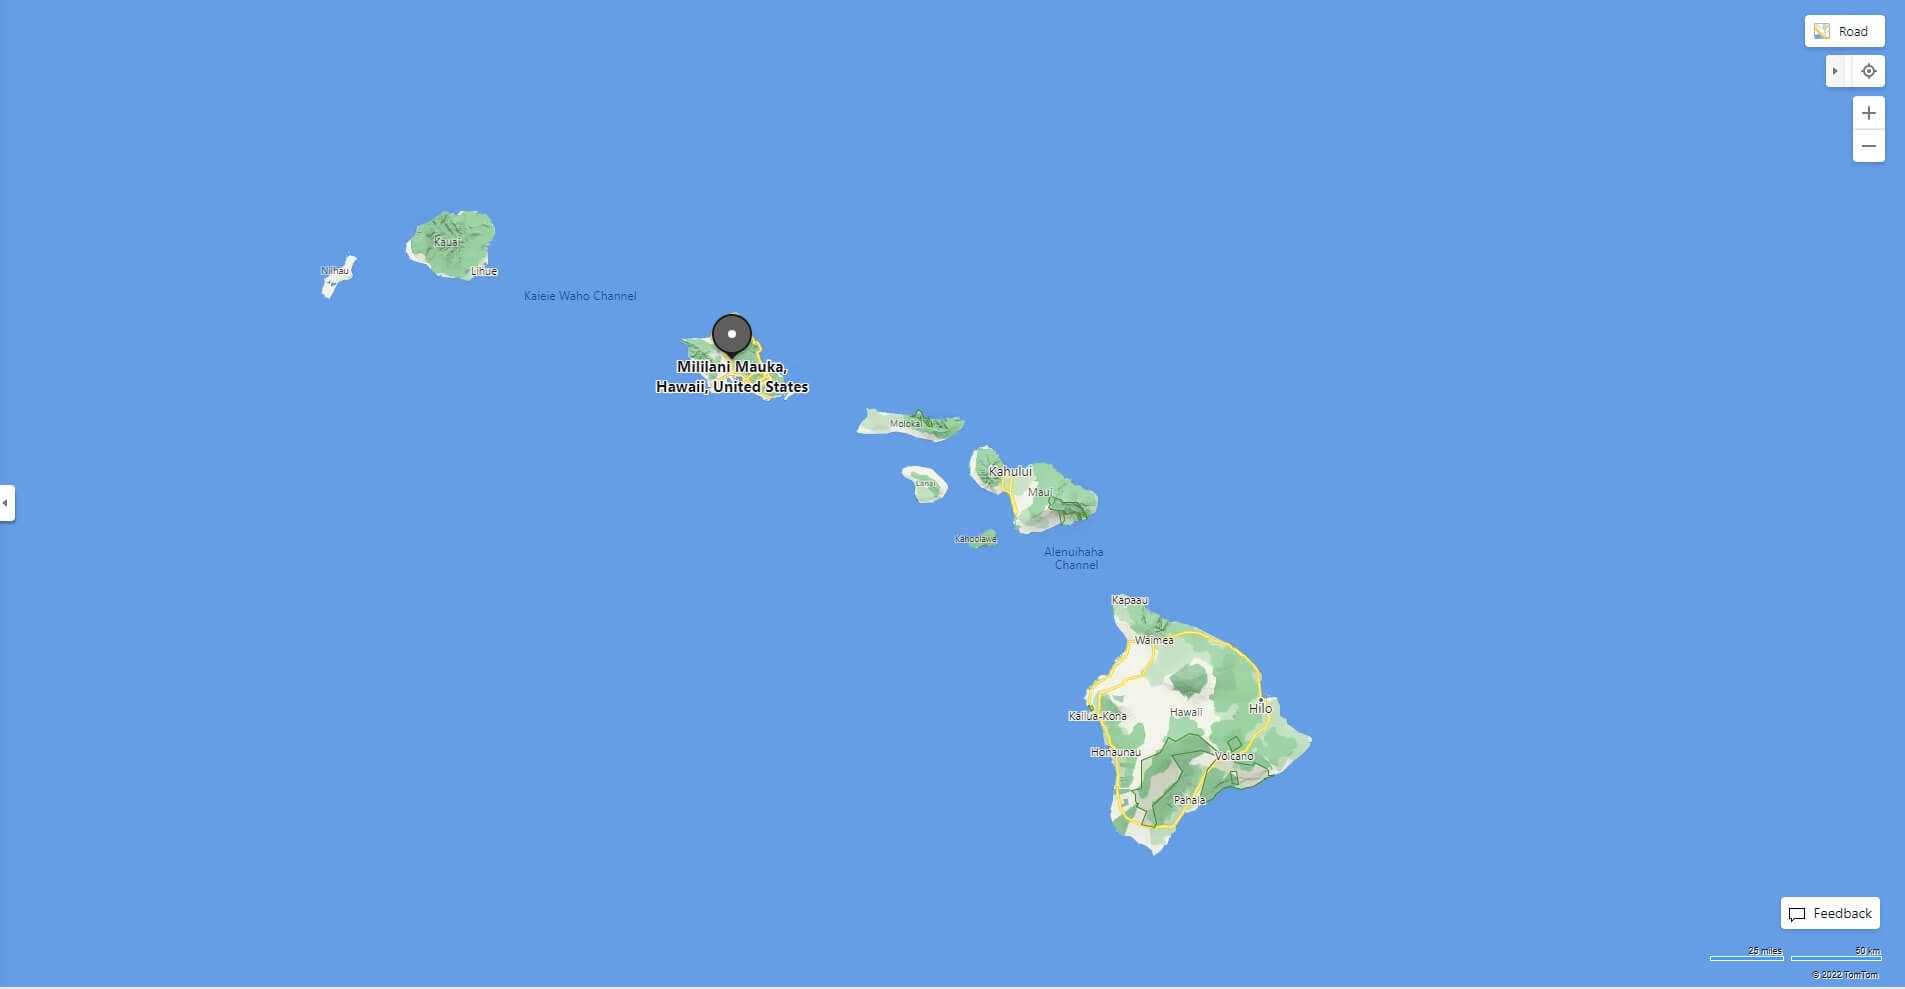 Where is Mililani Mauka in Hawaii